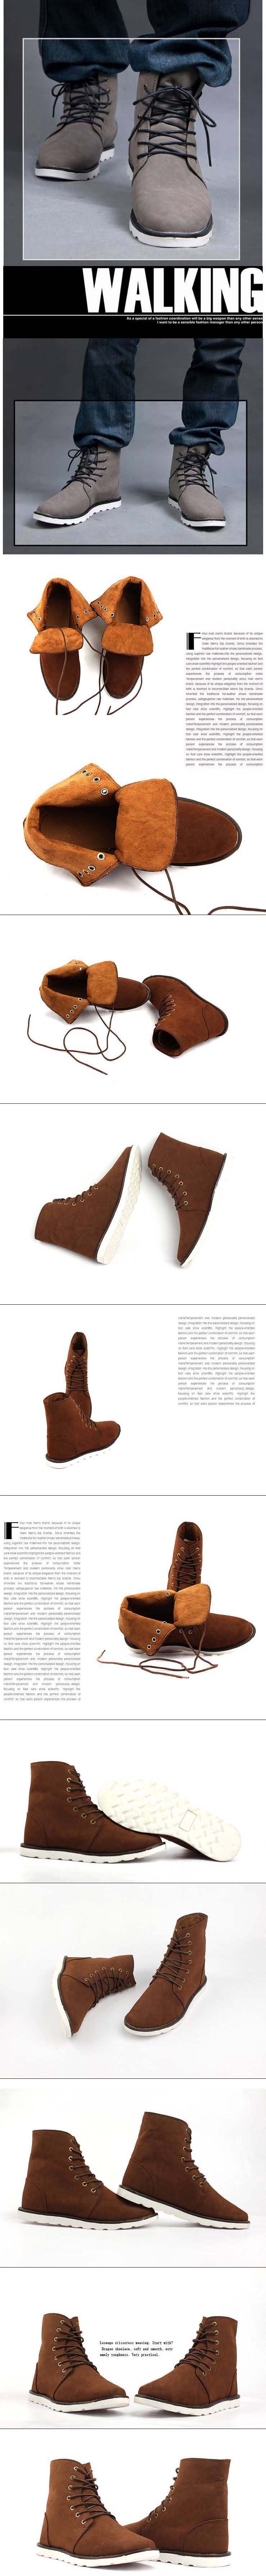 jual sepatu boot pria model terbaru dengan bahan kulit sintetis import